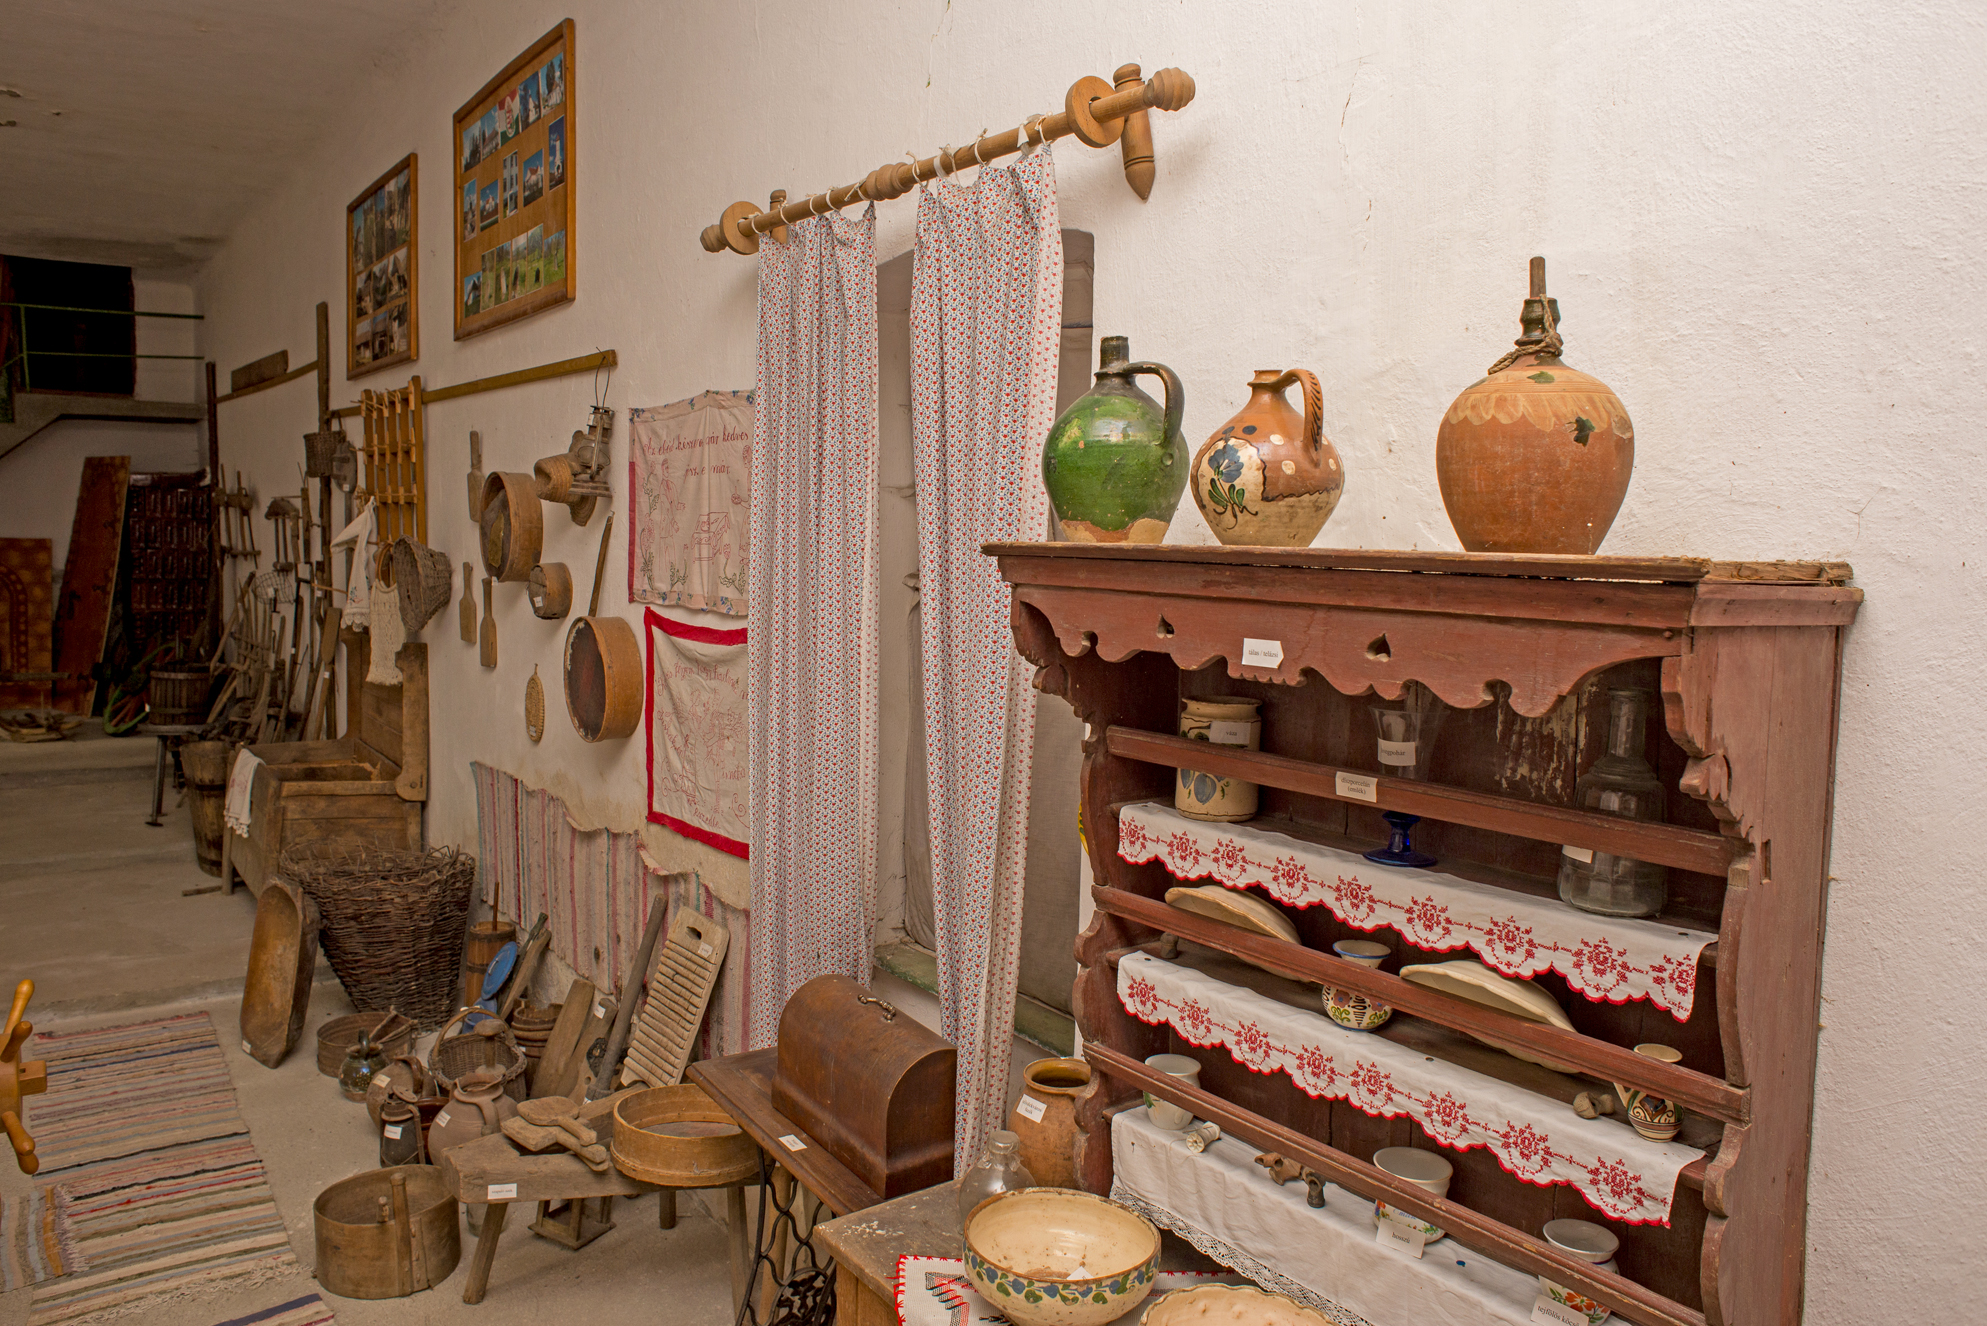 Muzeul satului - Falumúzeum - Local museum